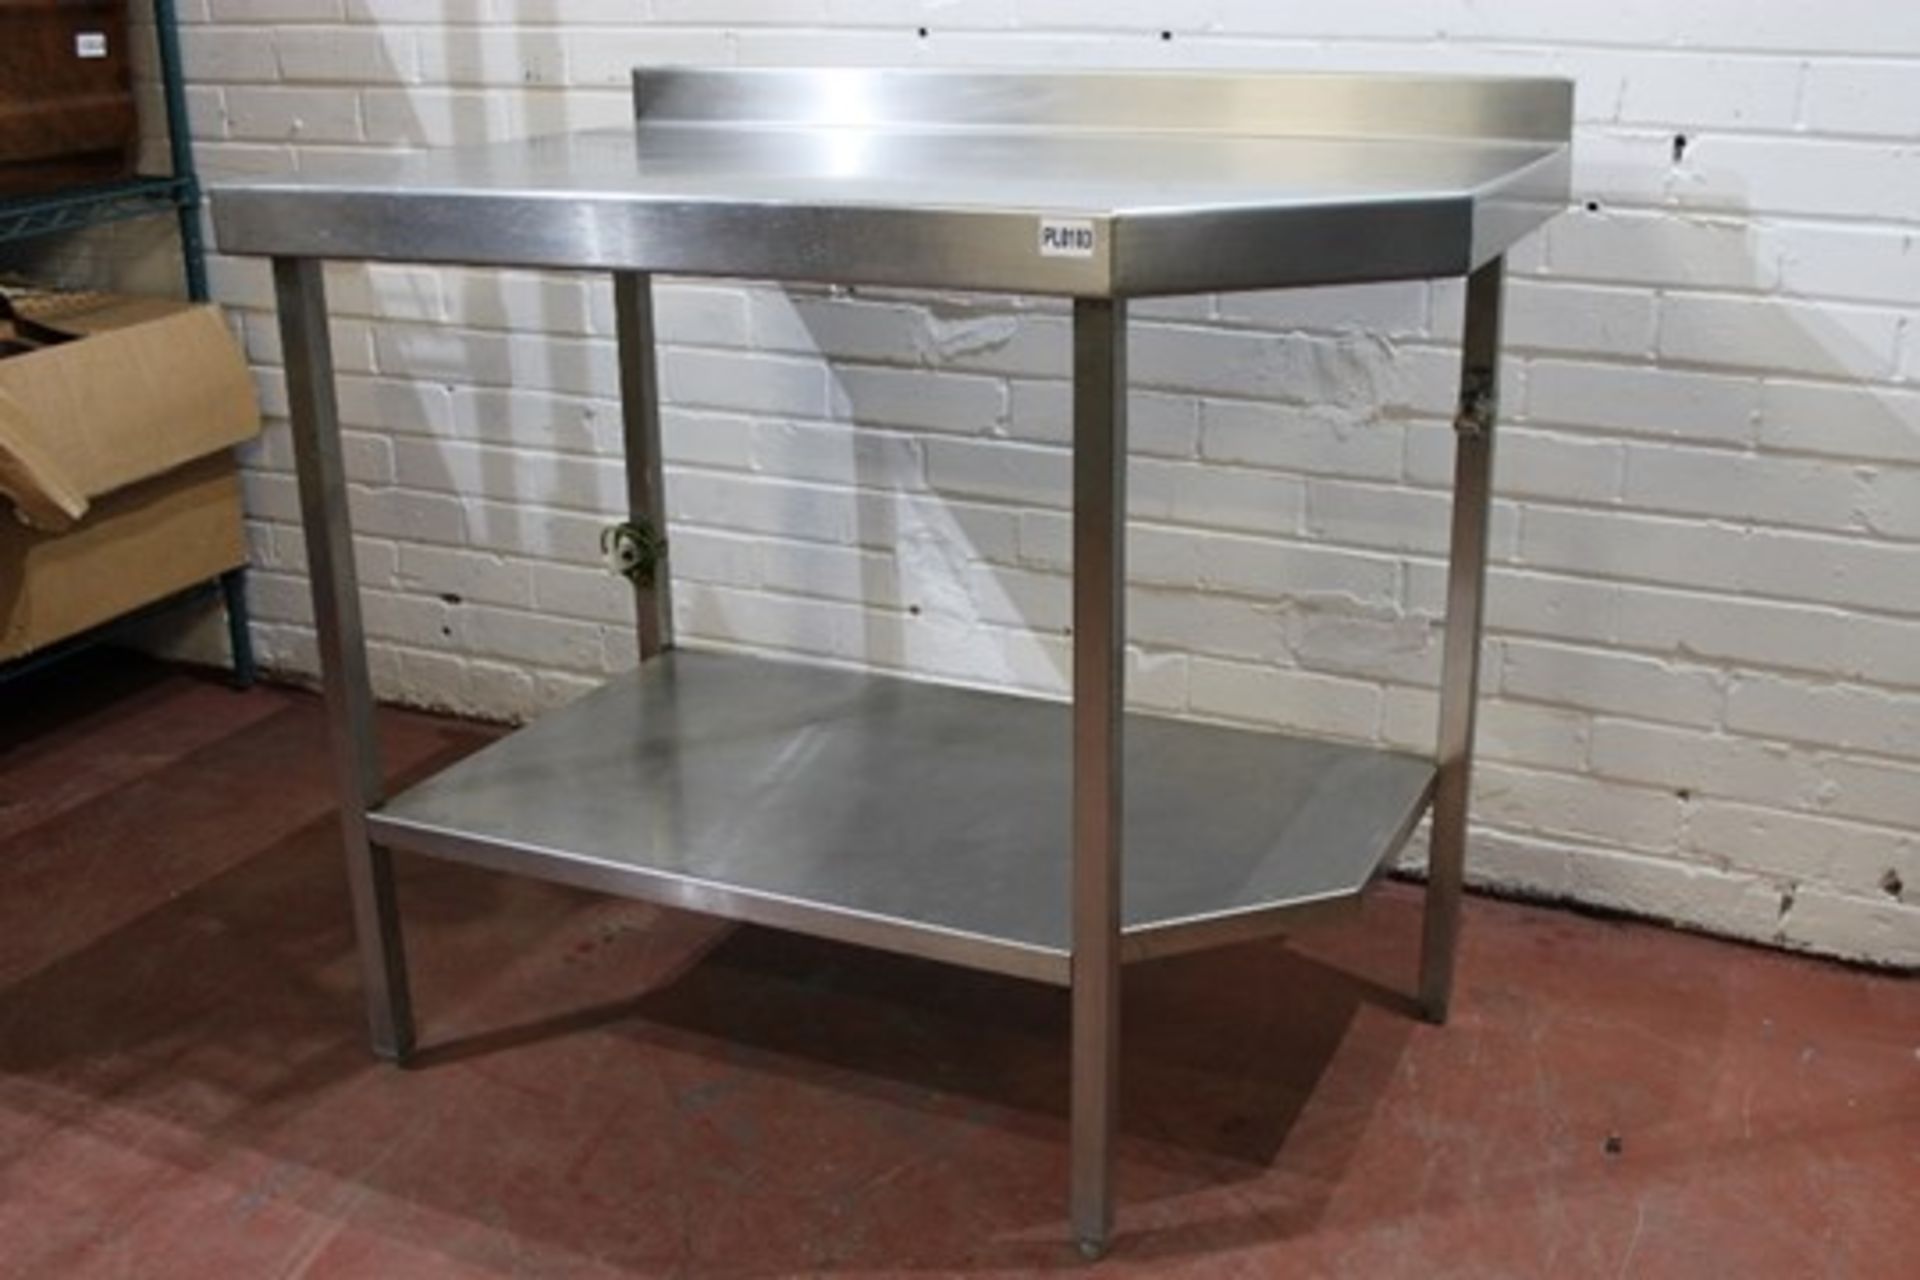 Stainless Steel Table – W100cm x H91cm x D65cm - NO VAT